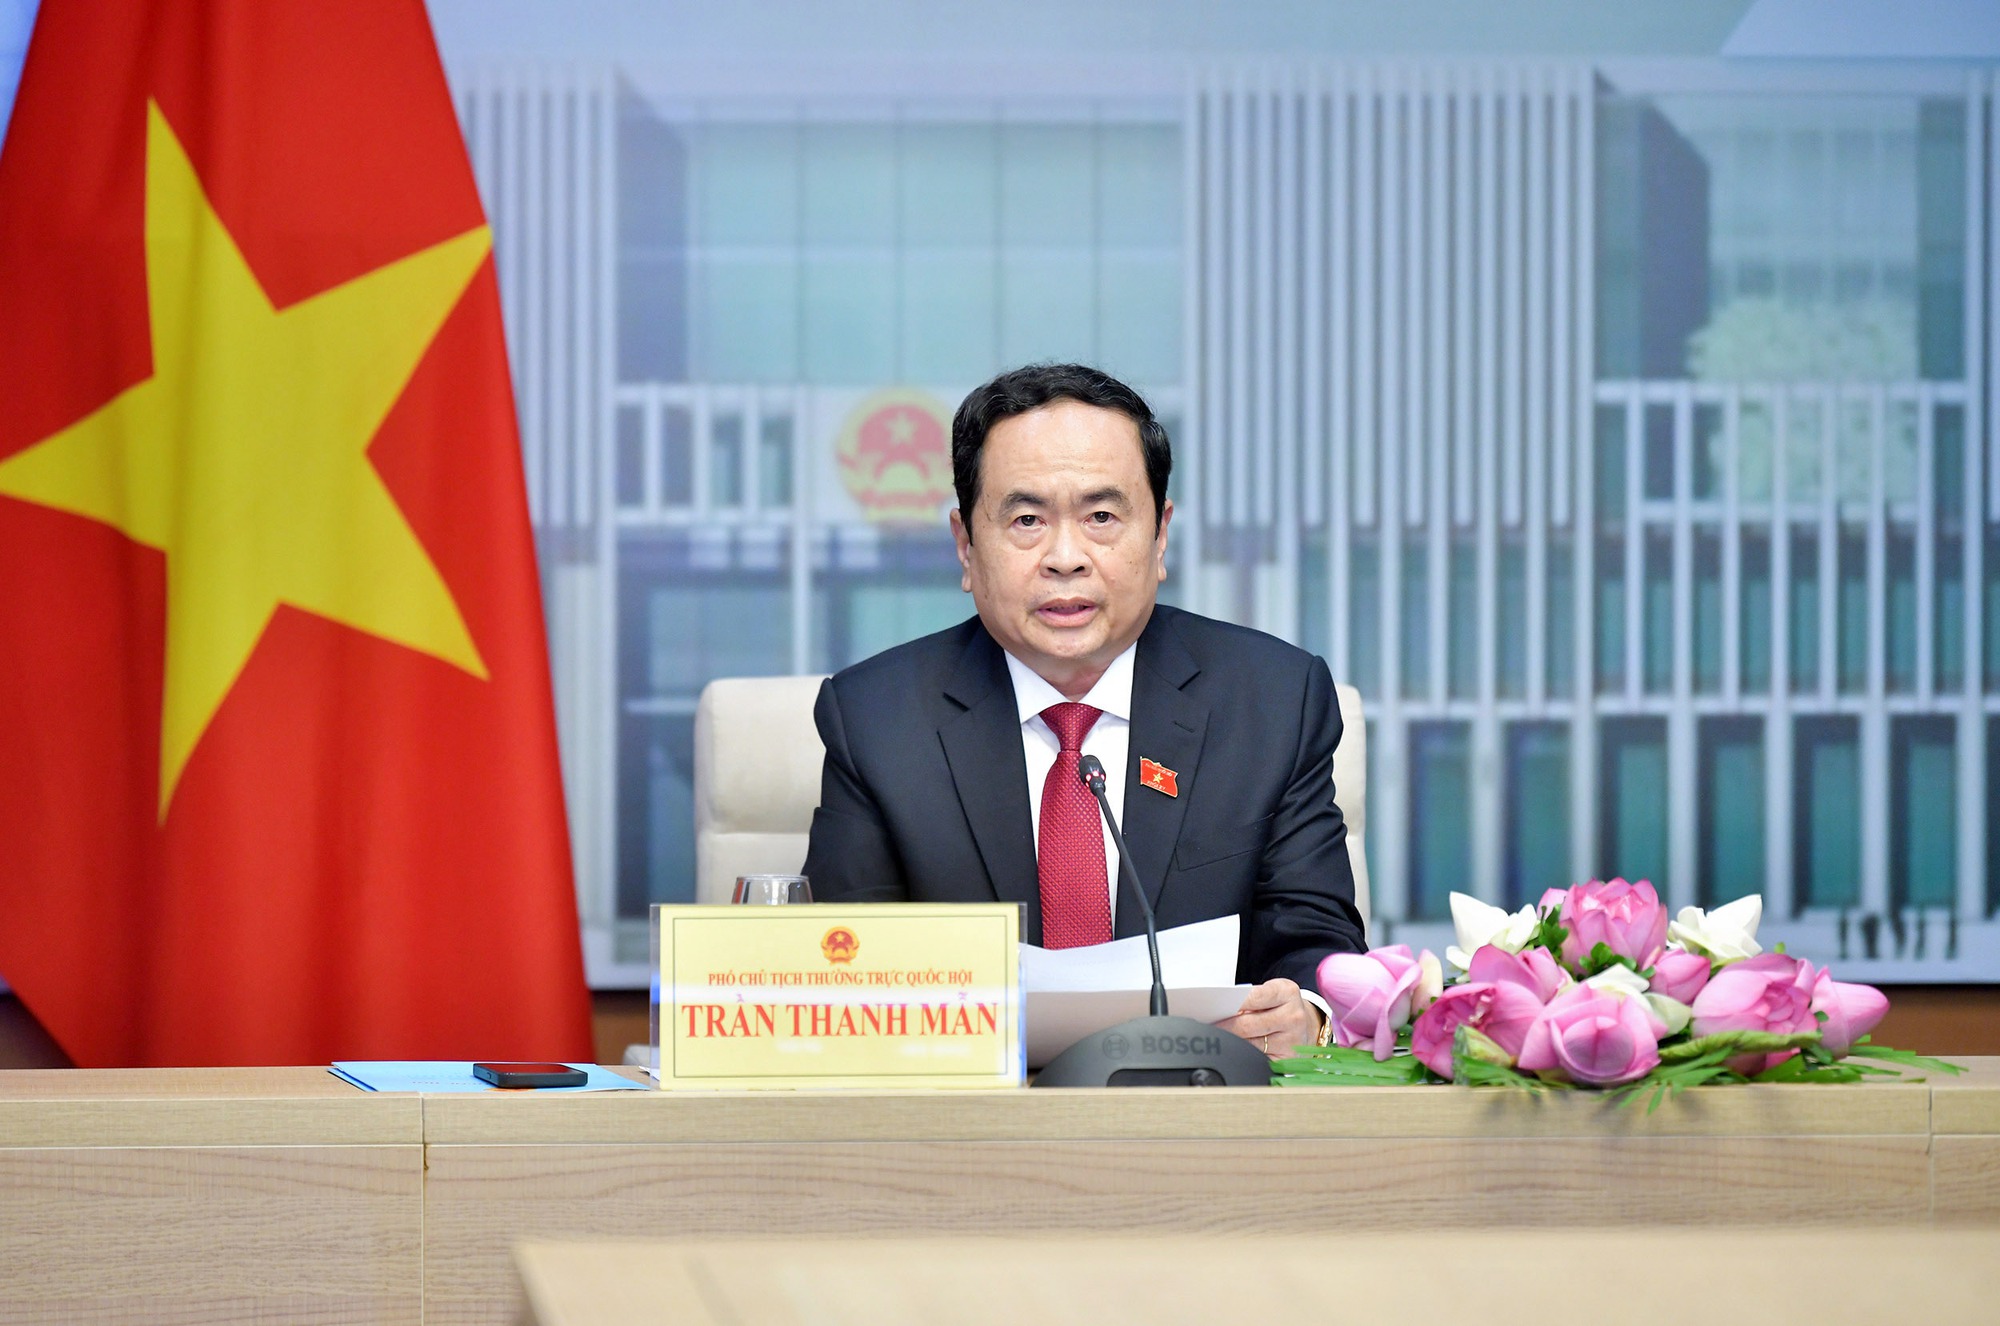 Phân công đồng chí Trần Thanh Mẫn điều hành hoạt động của Ủy ban Thường vụ Quốc hội và Quốc hội- Ảnh 4.